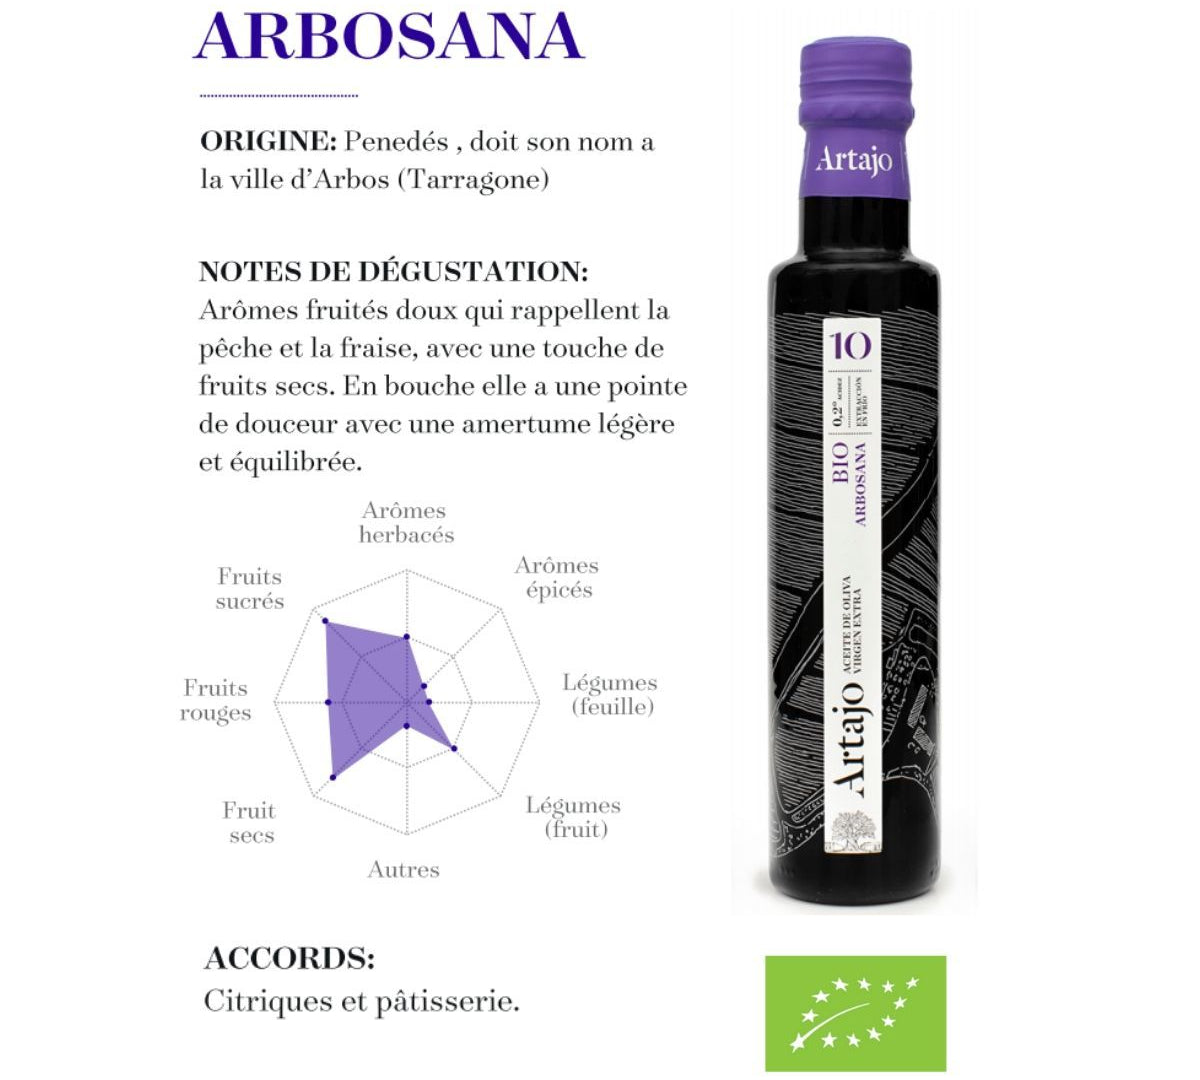 Notes de dégustation de notre huile d'olive BIO Arbosana